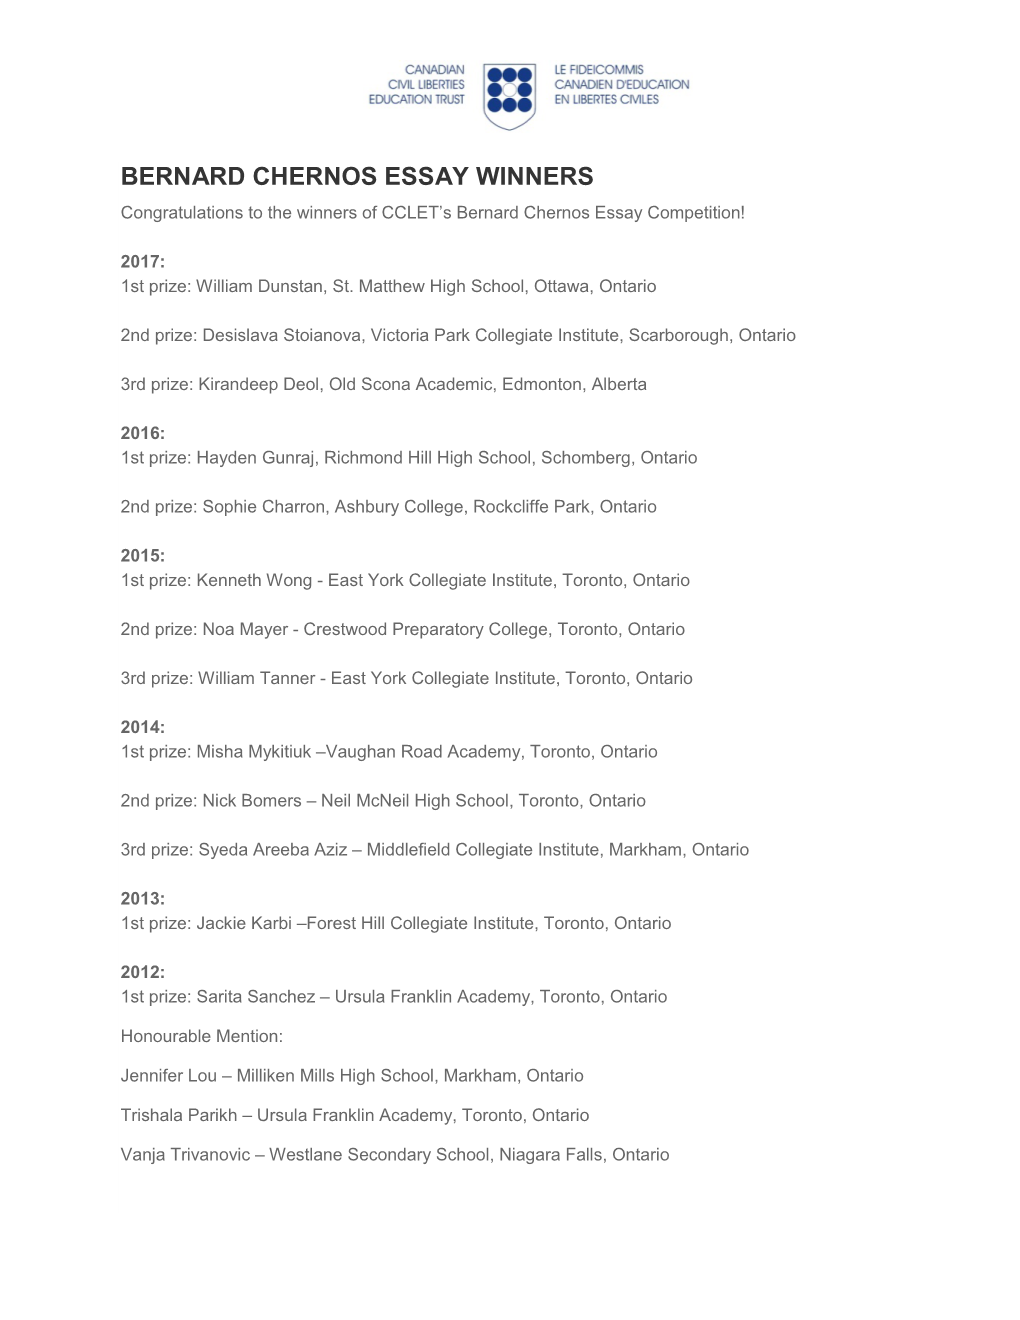 BERNARD CHERNOS ESSAY WINNERS Congratulations to the Winners of CCLET’S Bernard Chernos Essay Competition!